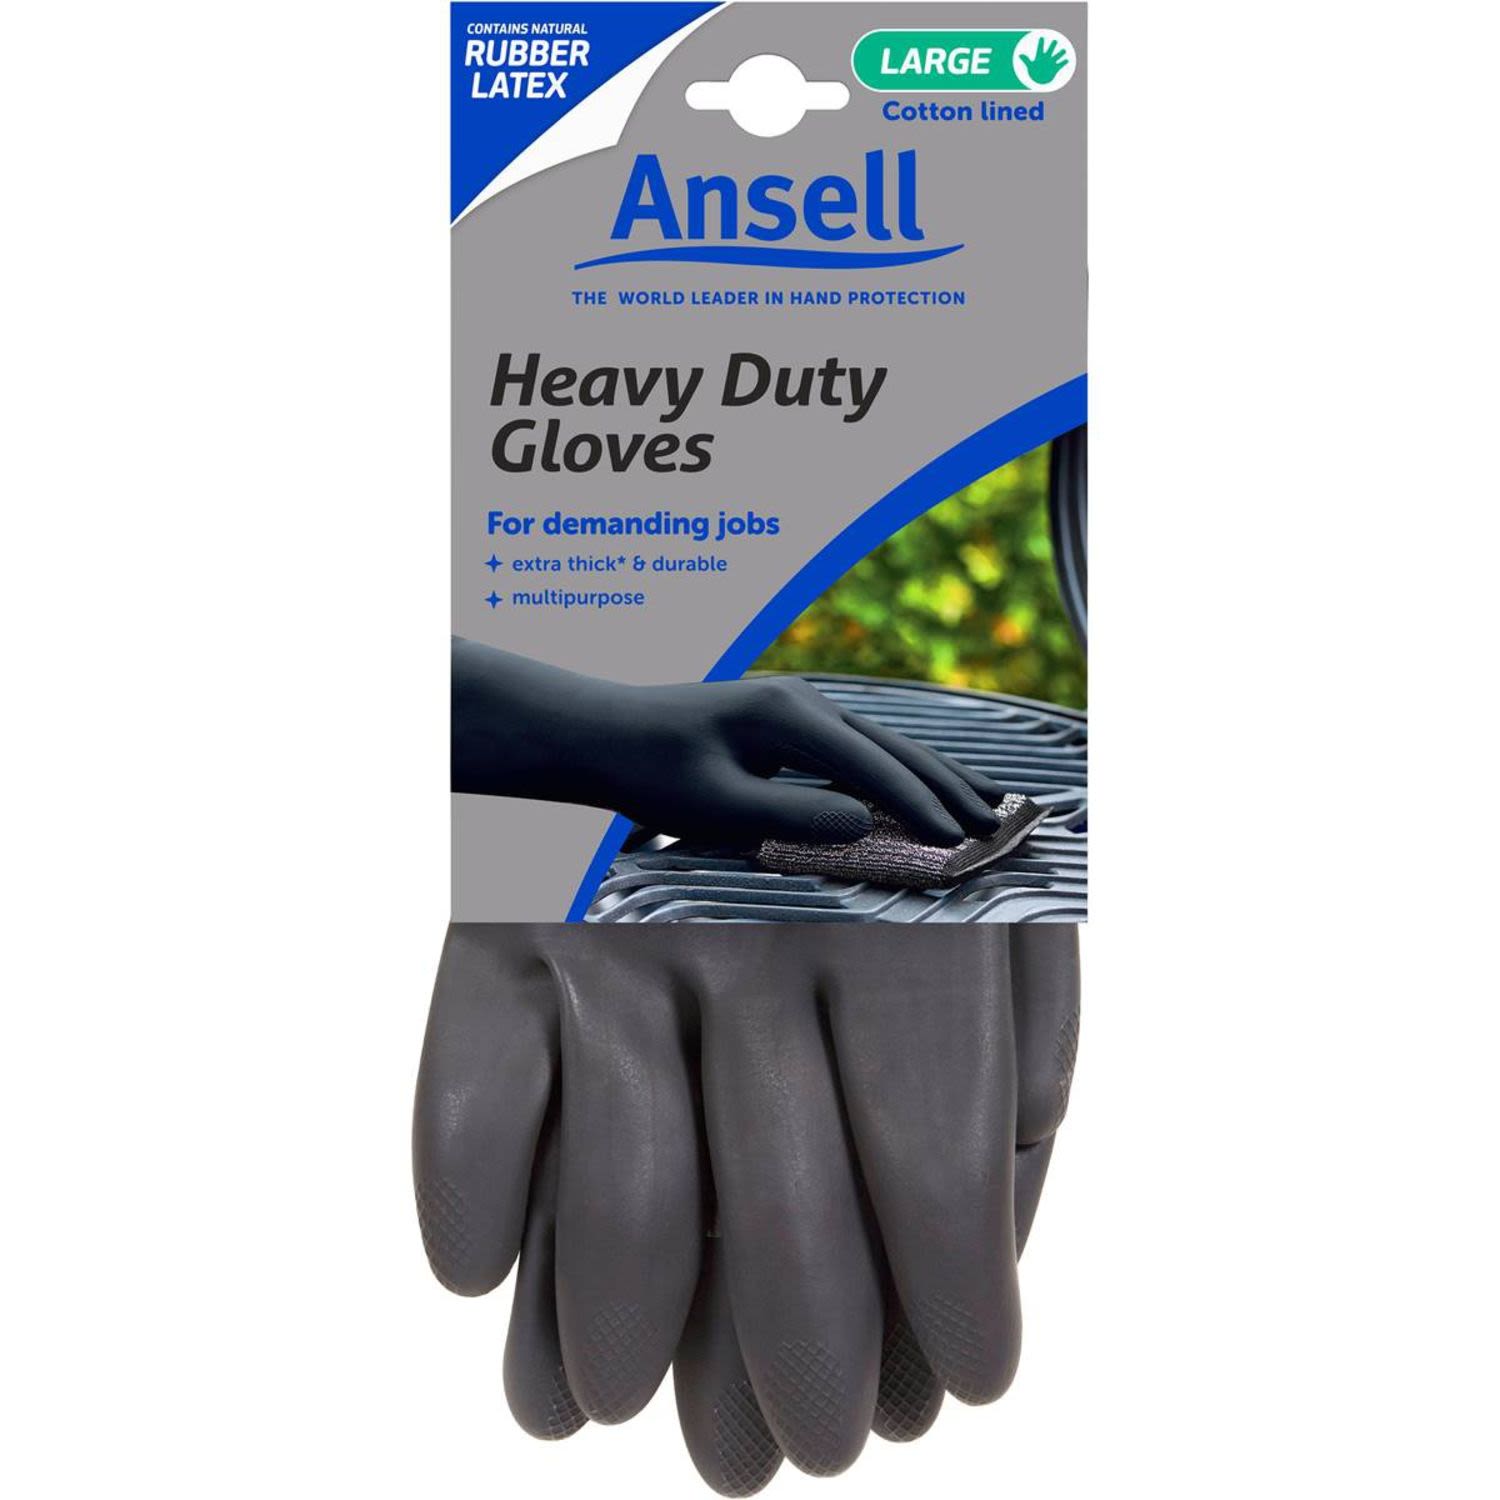 Ansell Glove Heavy Duty Large, 1 Each